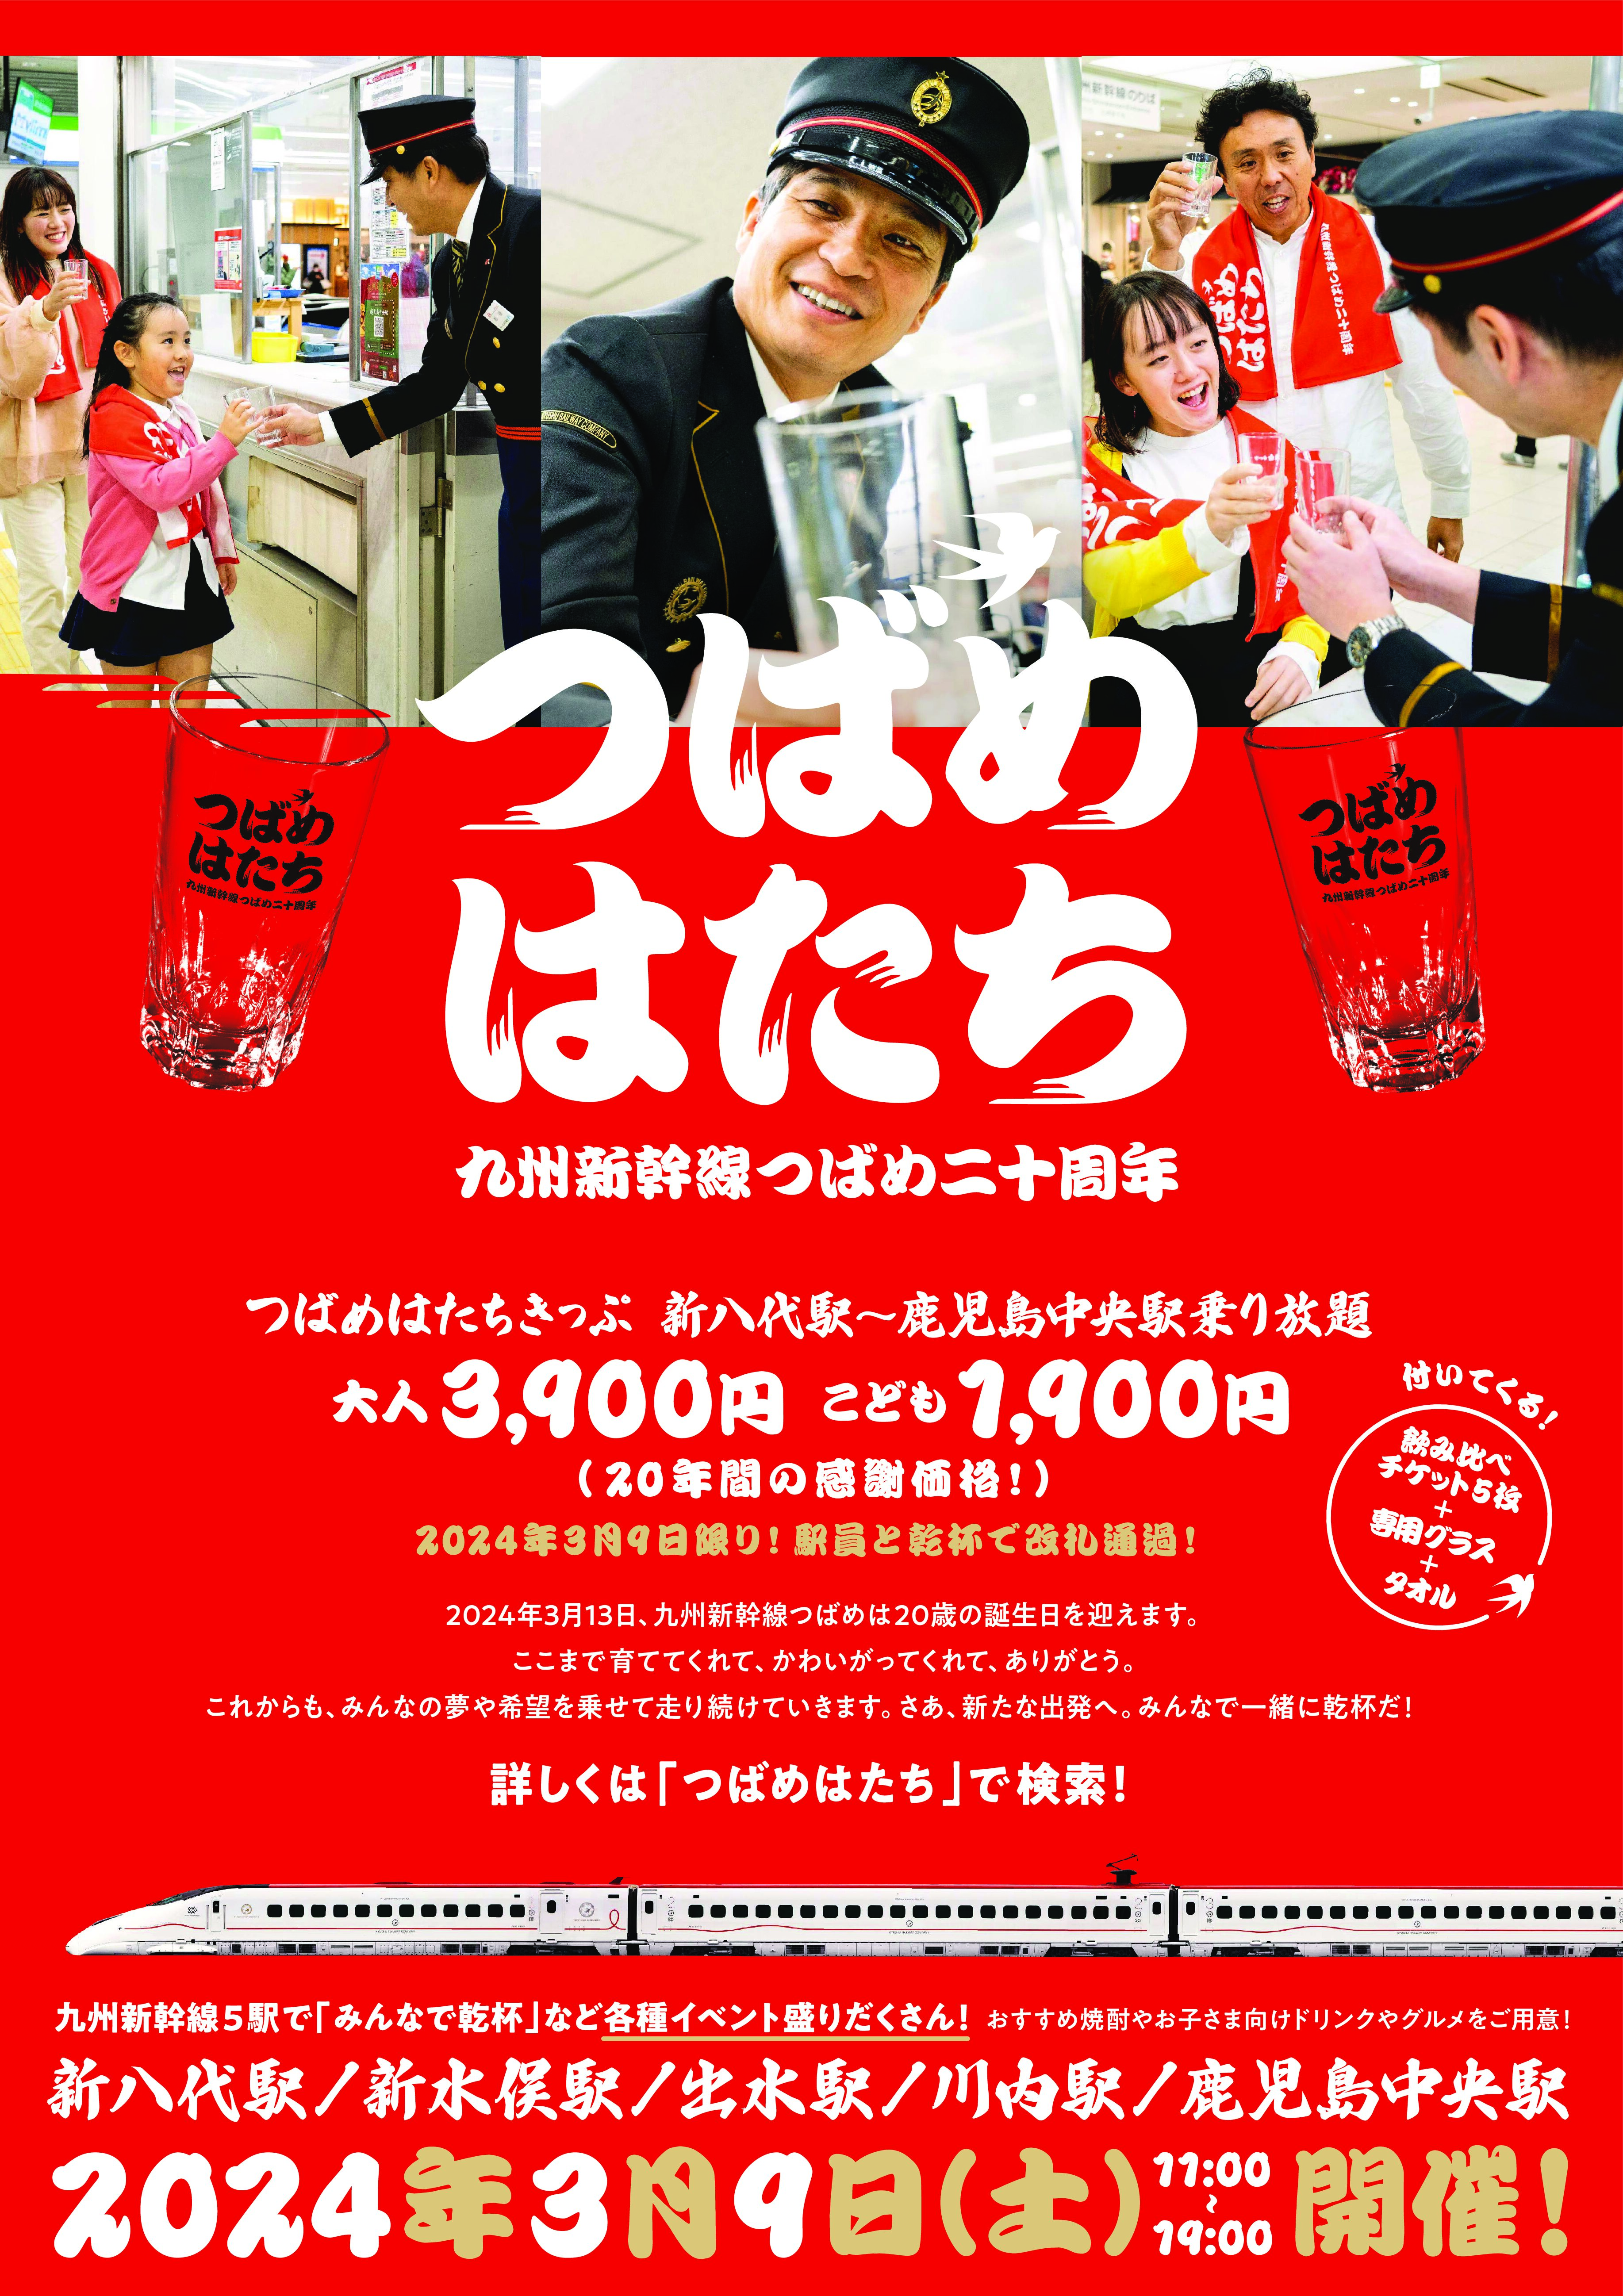 九州新幹線つばめ 20 周年記念「つばめはたち」